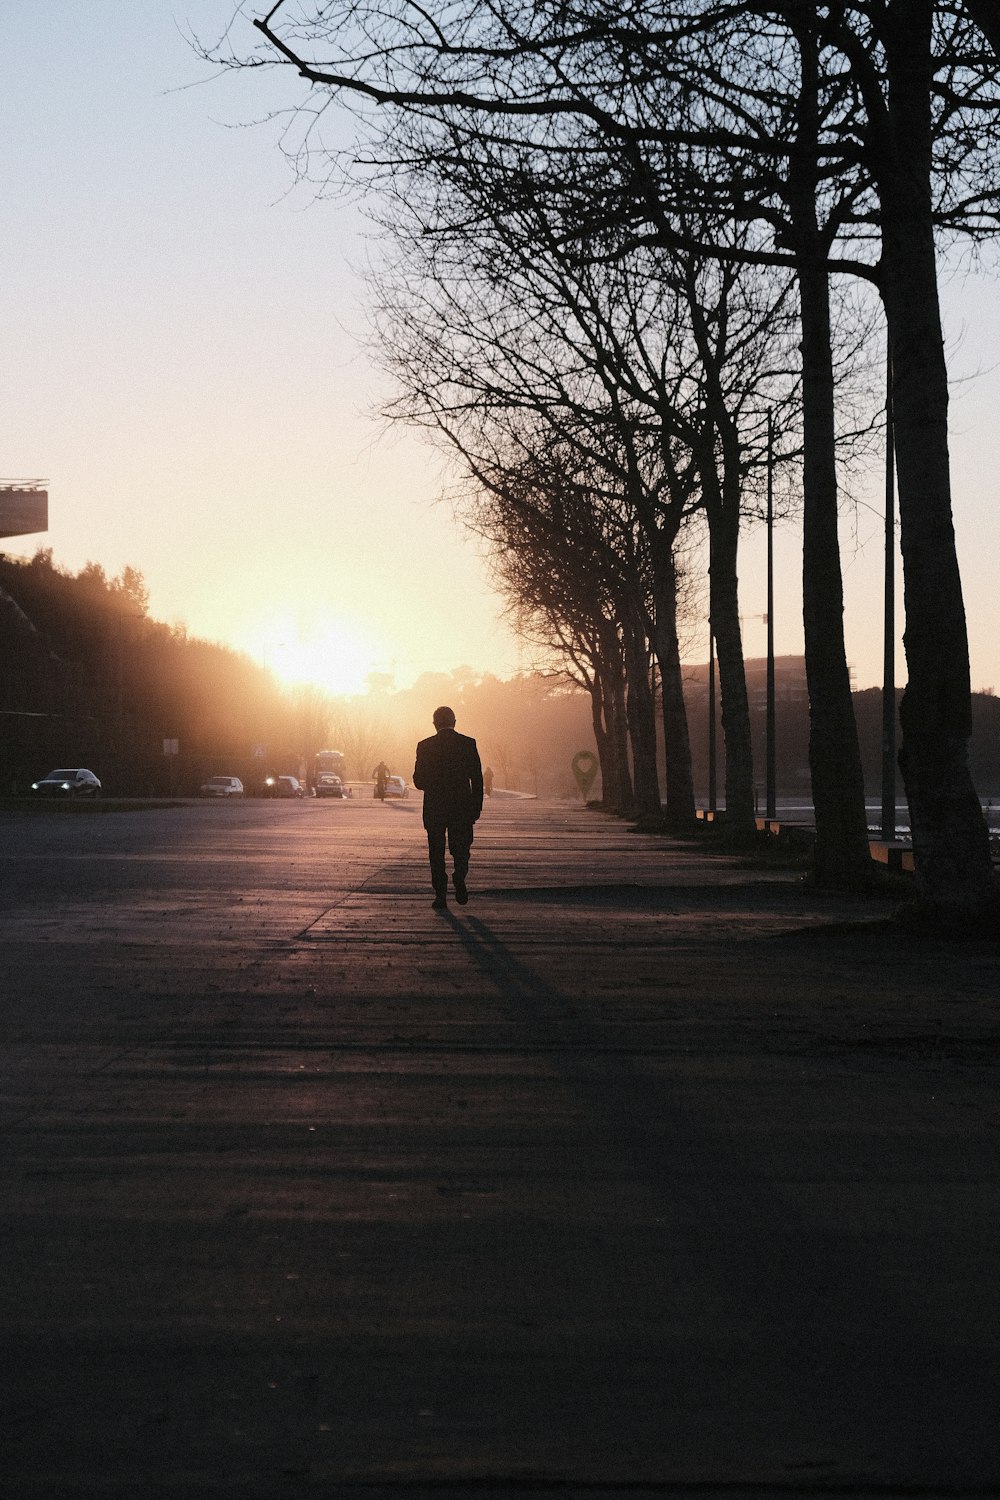 une personne marchant dans une rue au coucher du soleil